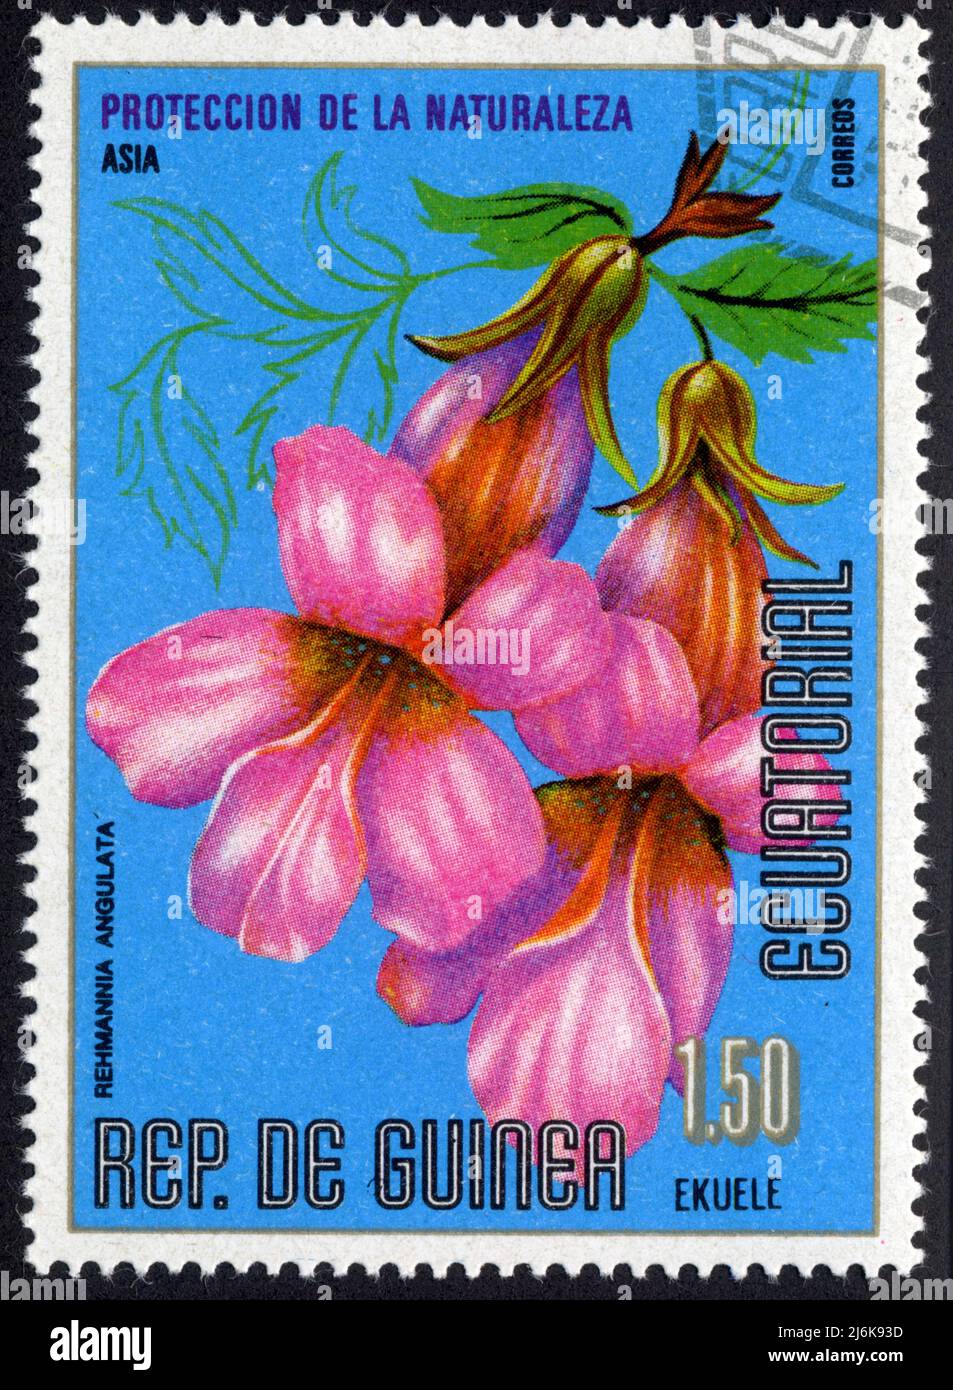 Timbre oblitéré Rep.de Guinea Ecuatorial, Proteccion de la naturaleza, Rehmannia angulata, Asia, Correos, 1,50 Ekuele Stock Photo